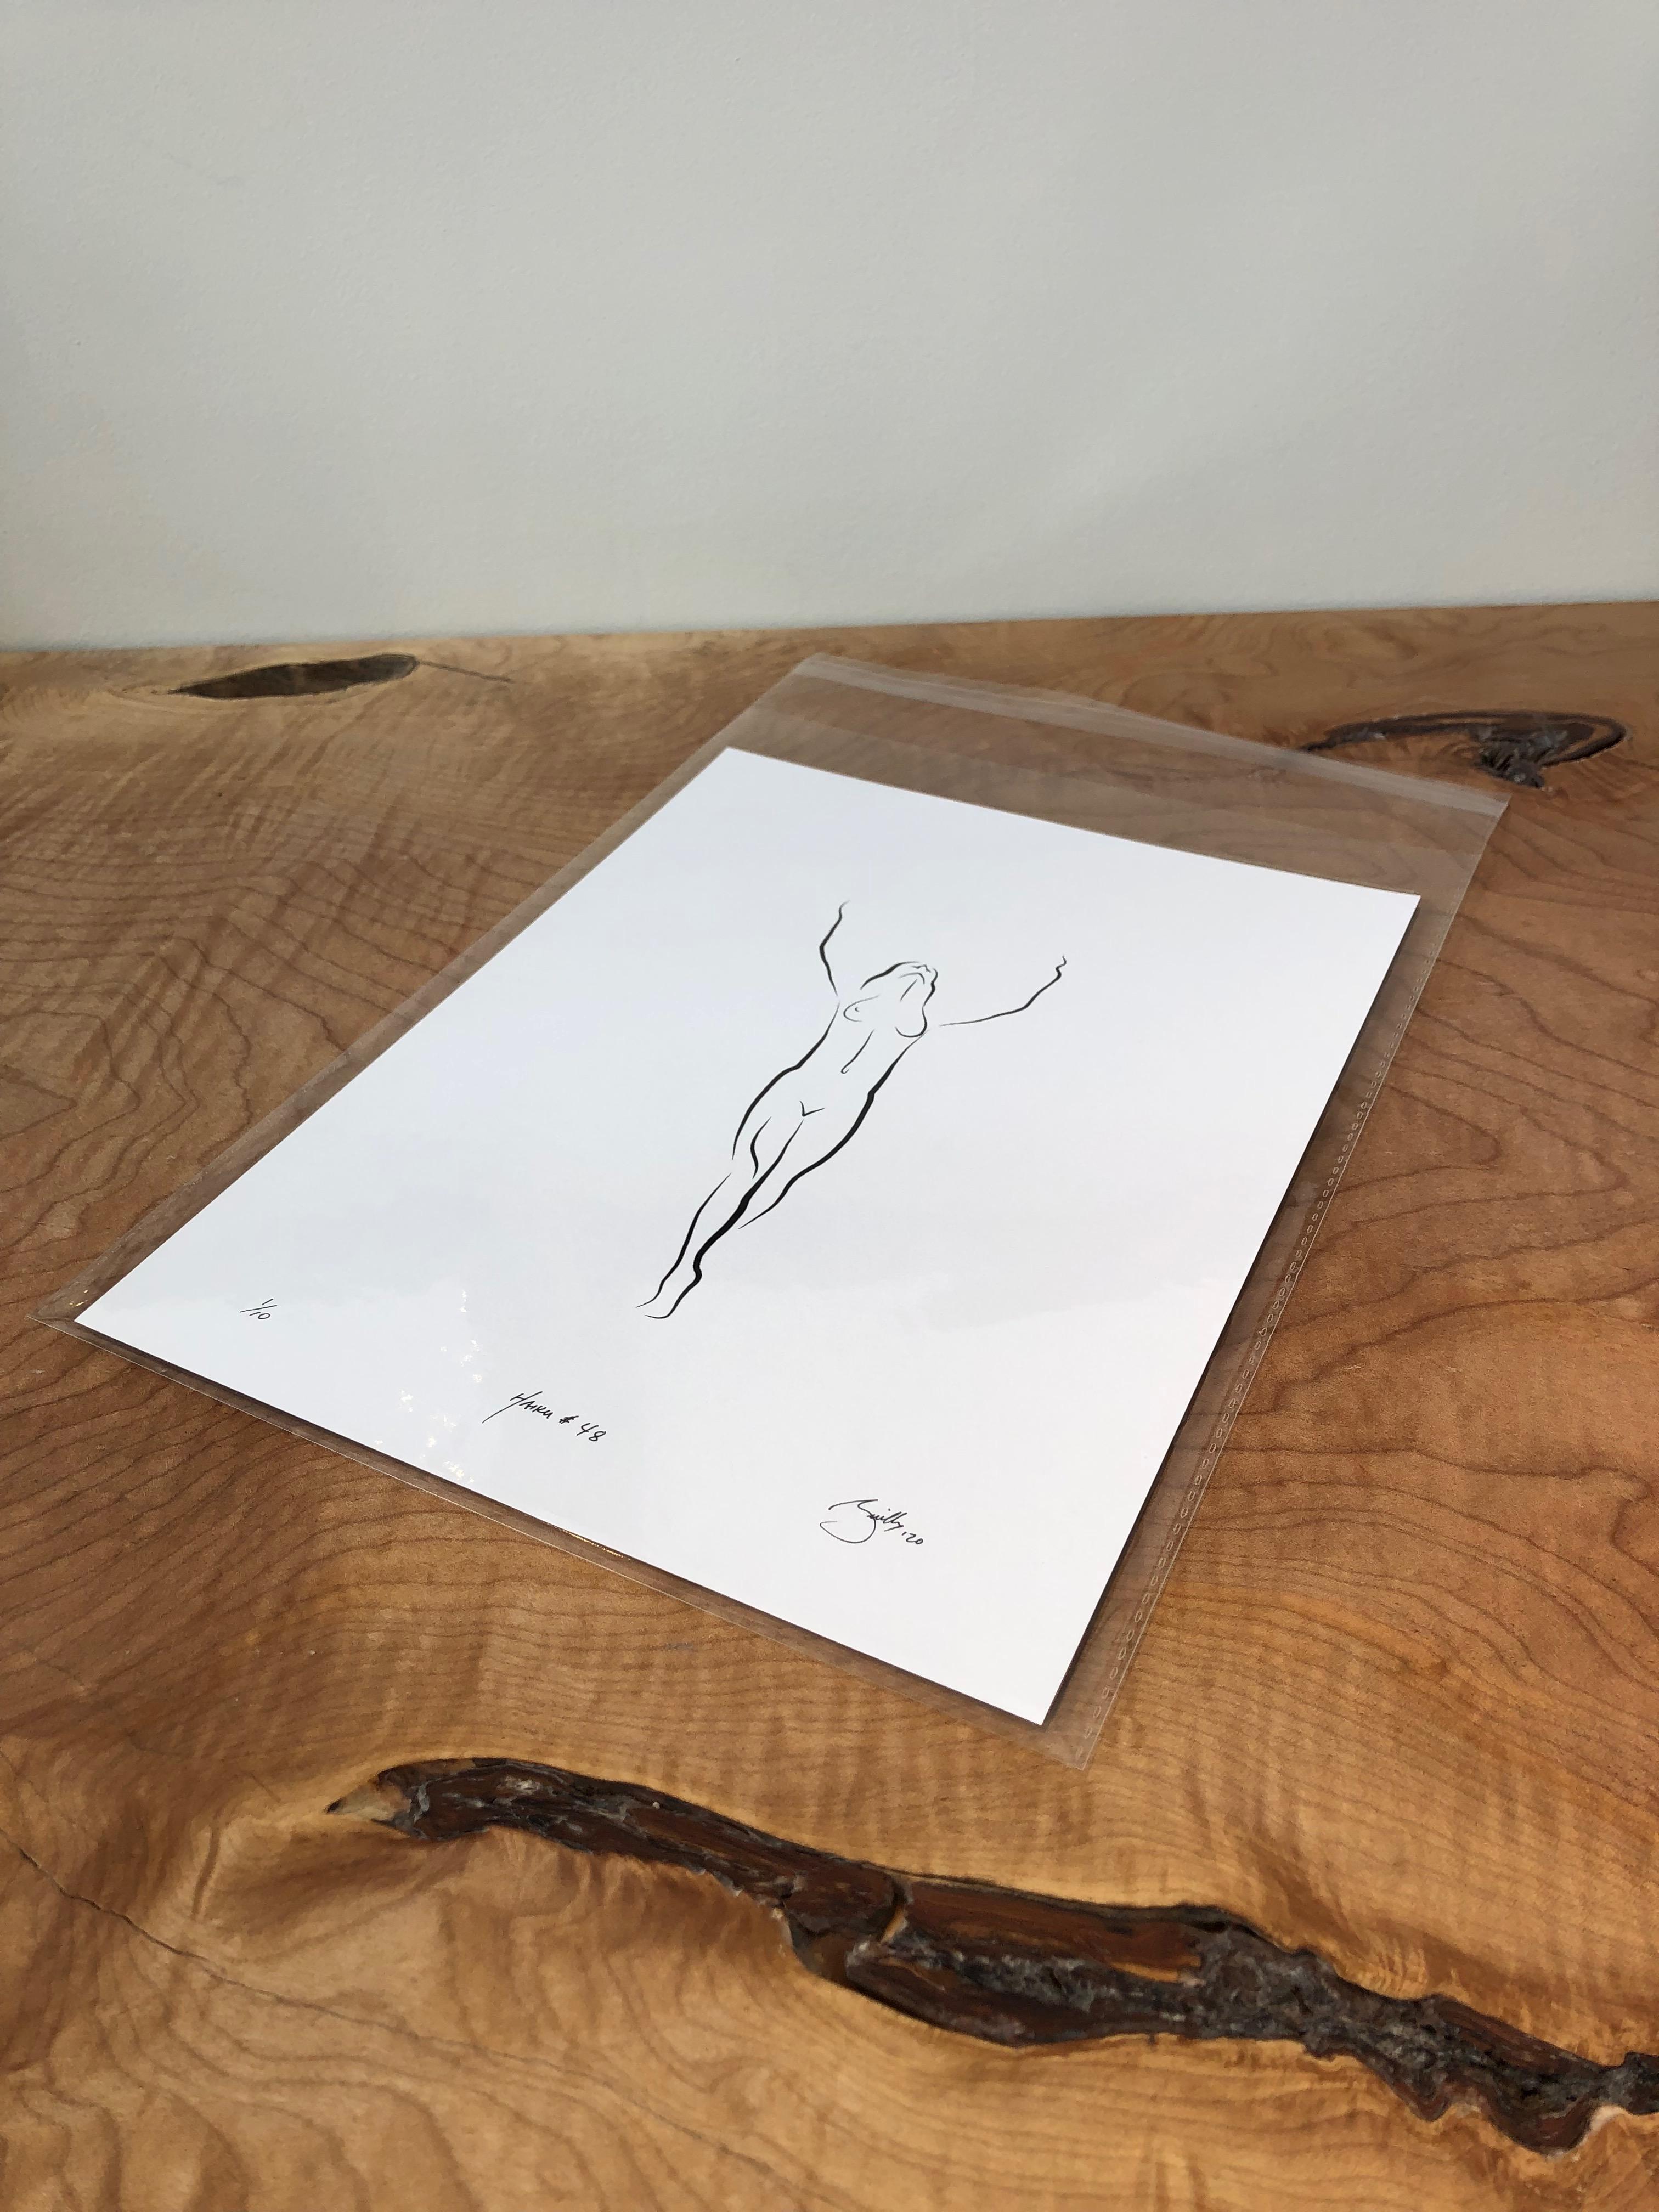 Haiku #48, 1/ 50 - Digital Vector Drawing Standing Female Nude Woman Figure - Print by Michael Binkley